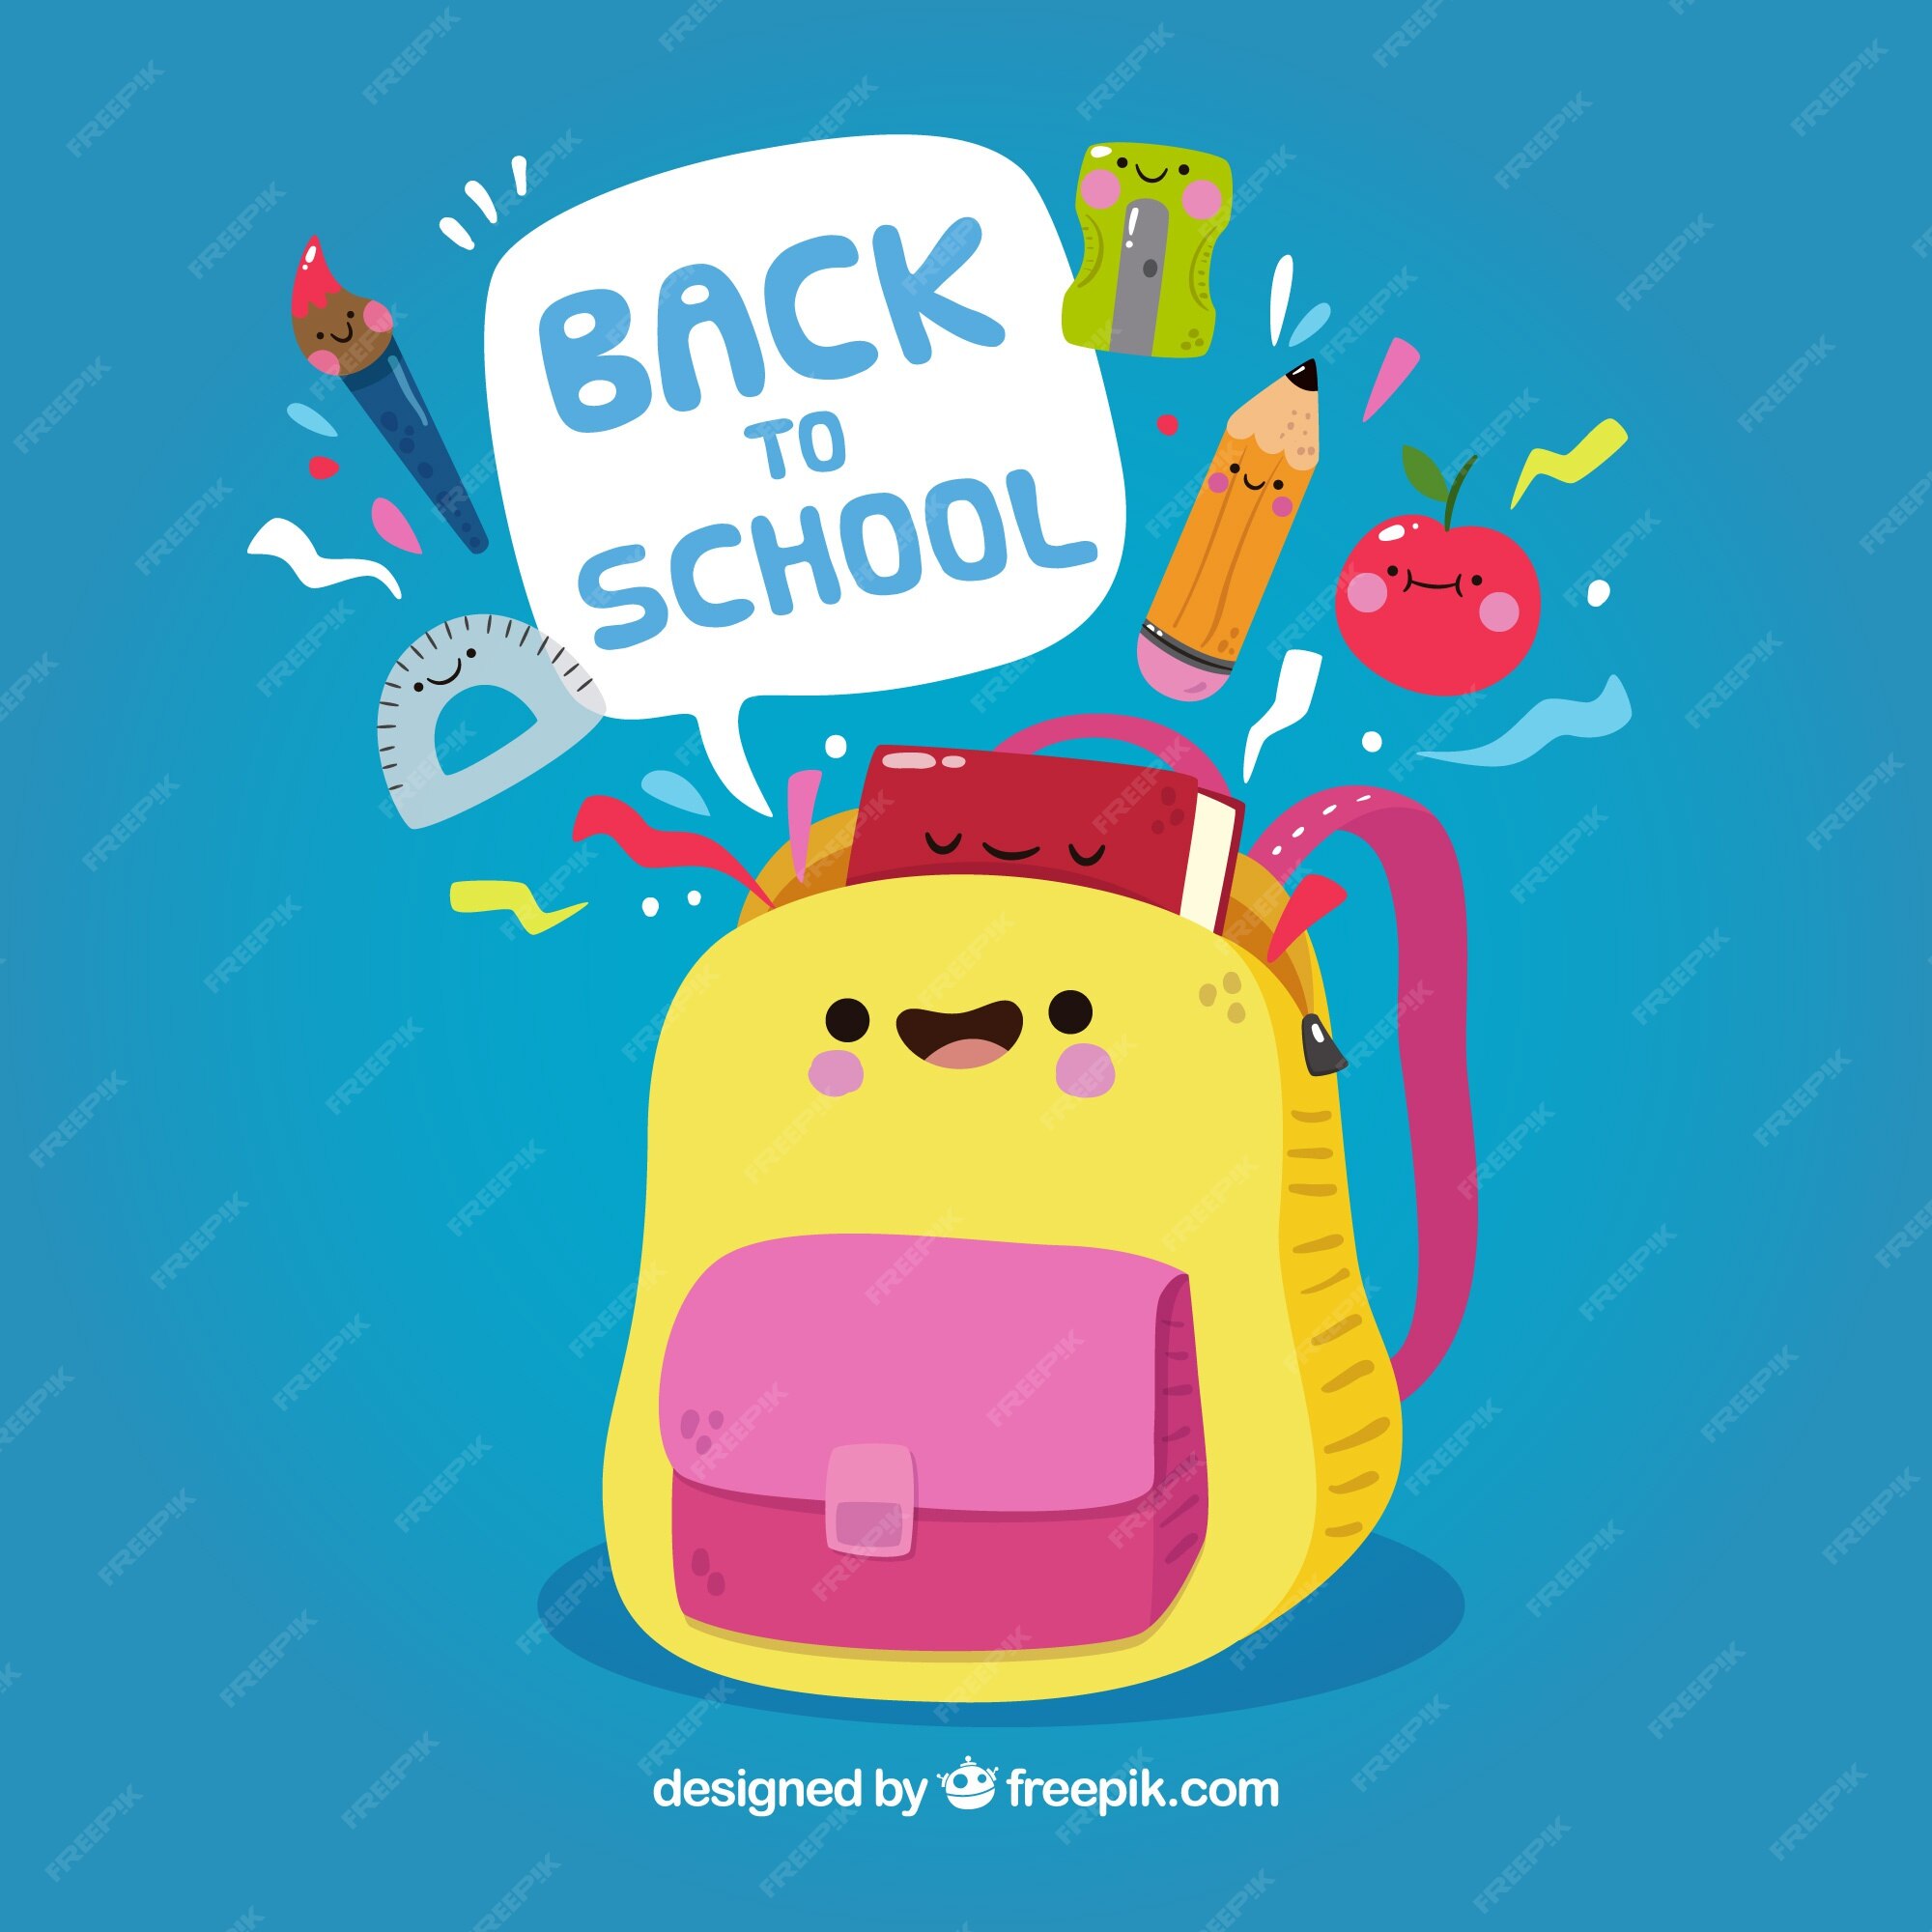 School bag Vectors & Illustrations for Free Download | Freepik